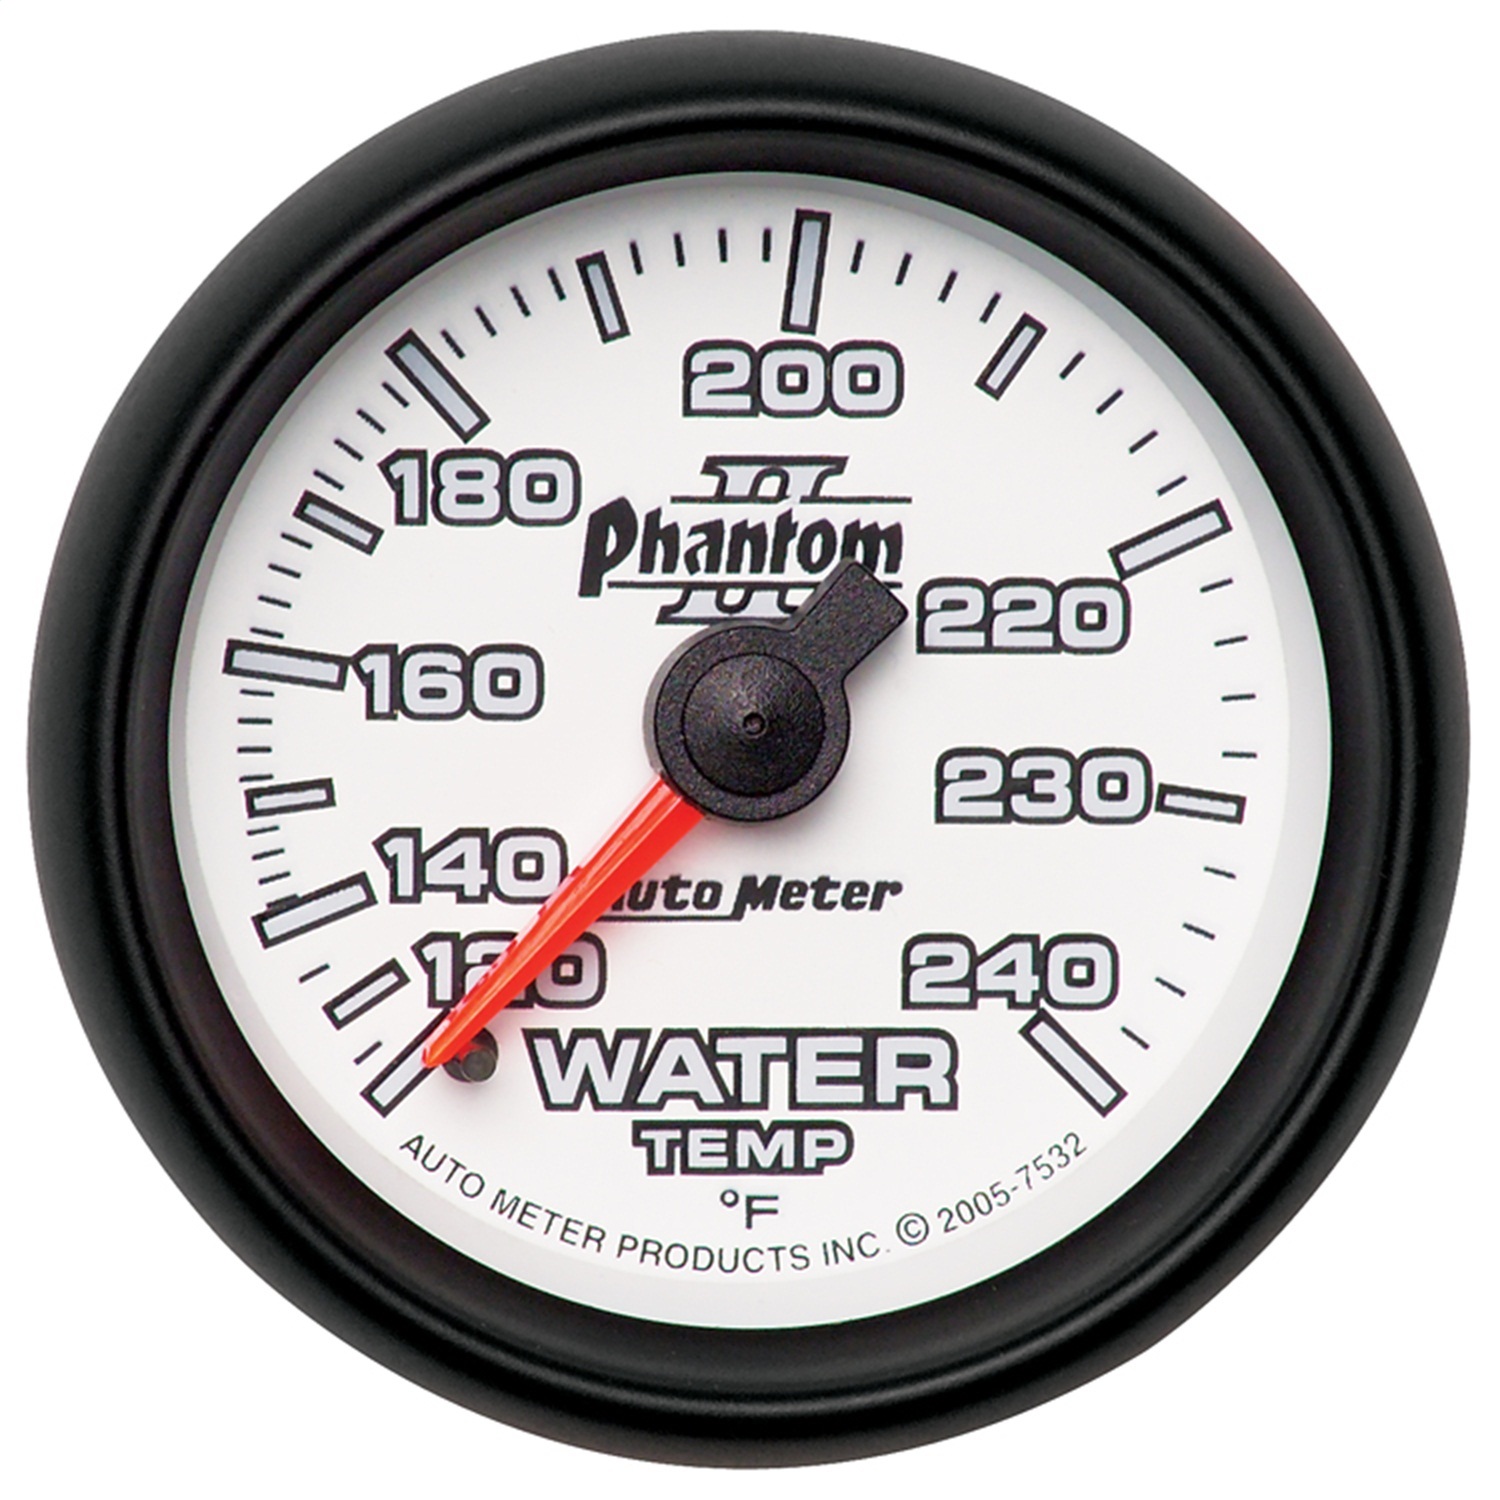 Auto Meter Auto Meter 7532 Phantom II; Mechanical Water Temperature Gauge